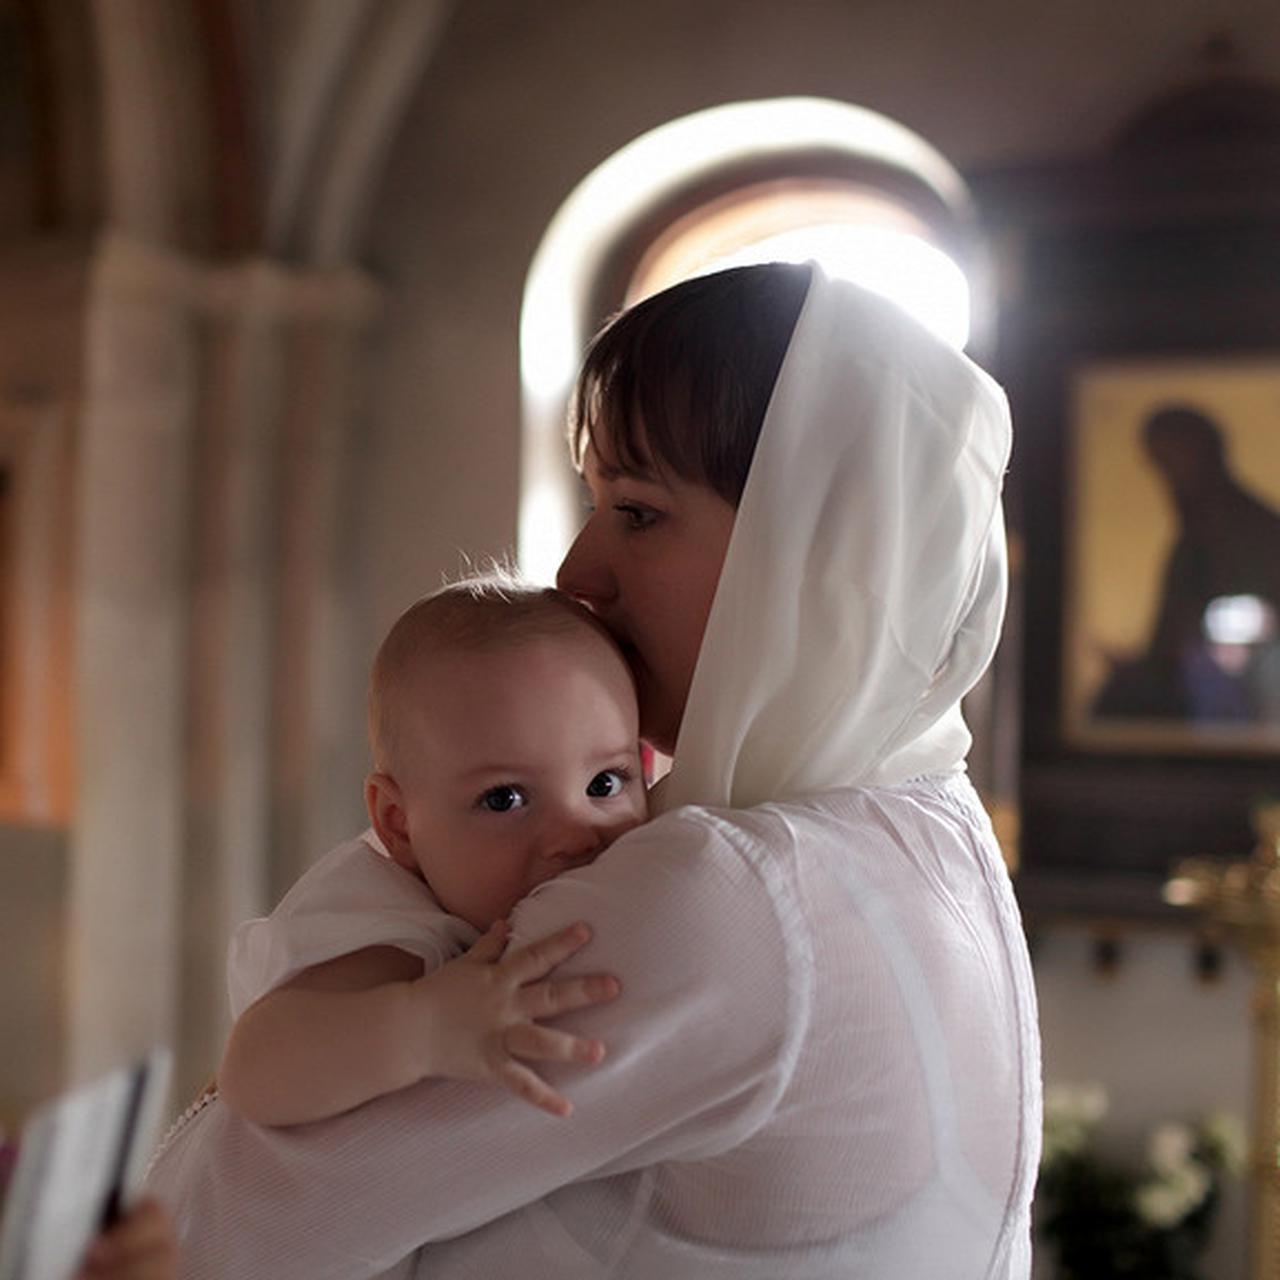 Можно ли крестить первую девочку? - 14 ответов на форуме malino-v.ru ()